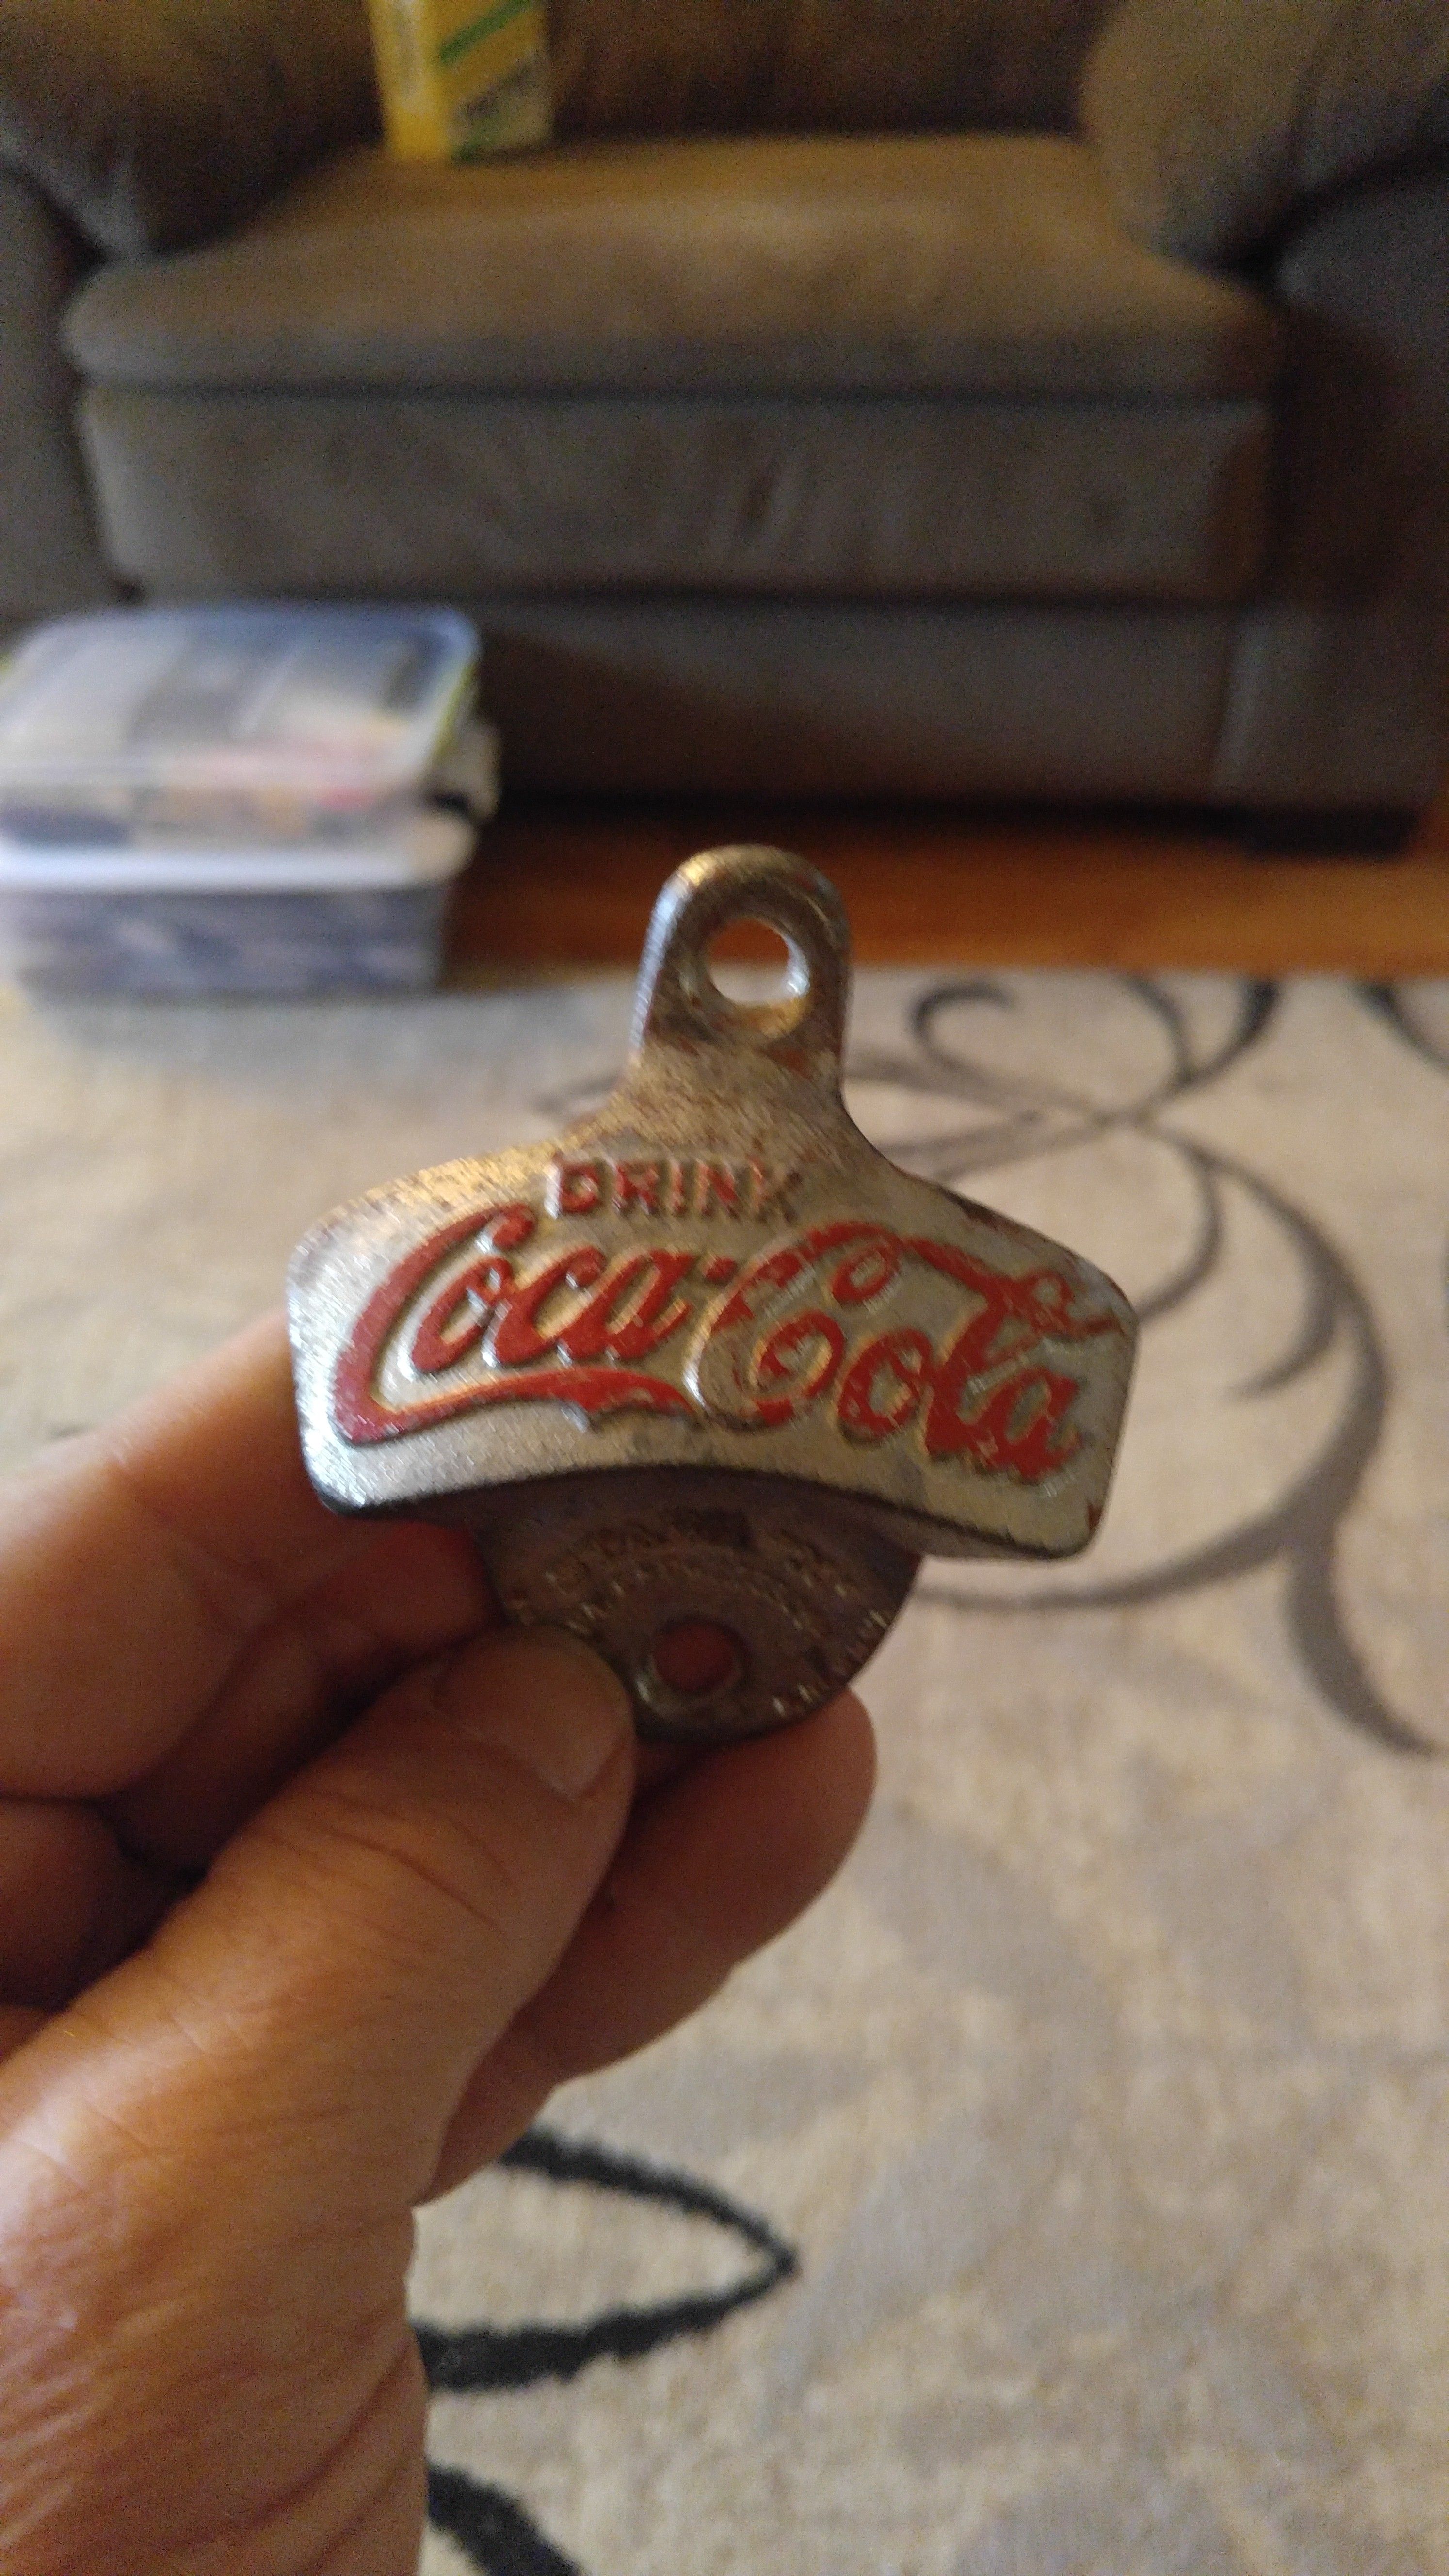 Vintage coke cola bottle opener